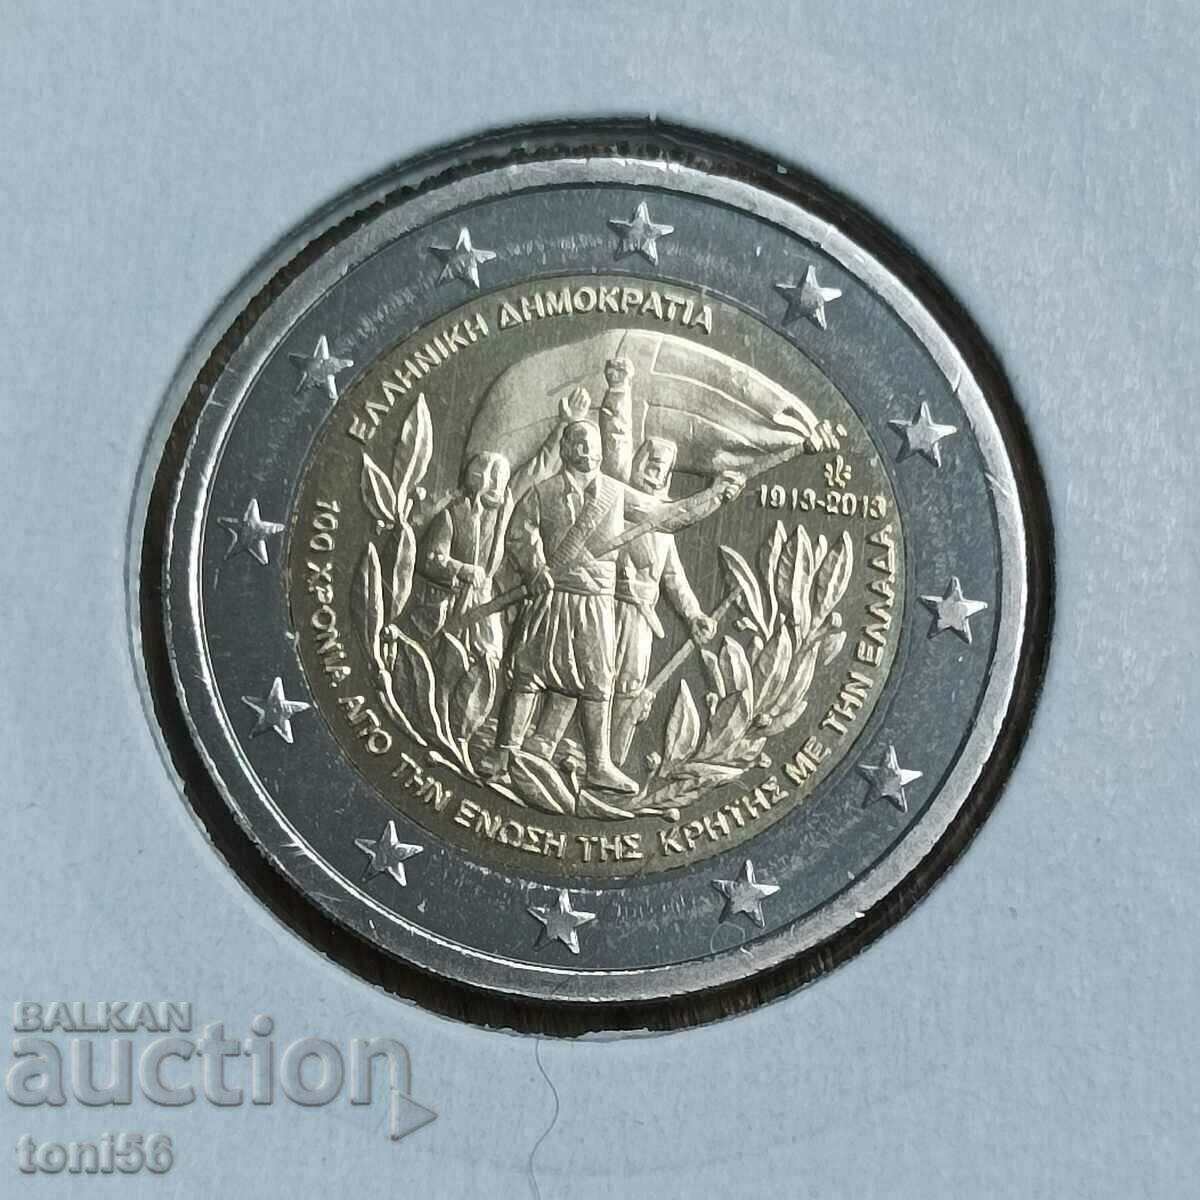 Greece 2 euro 2013 - Crete